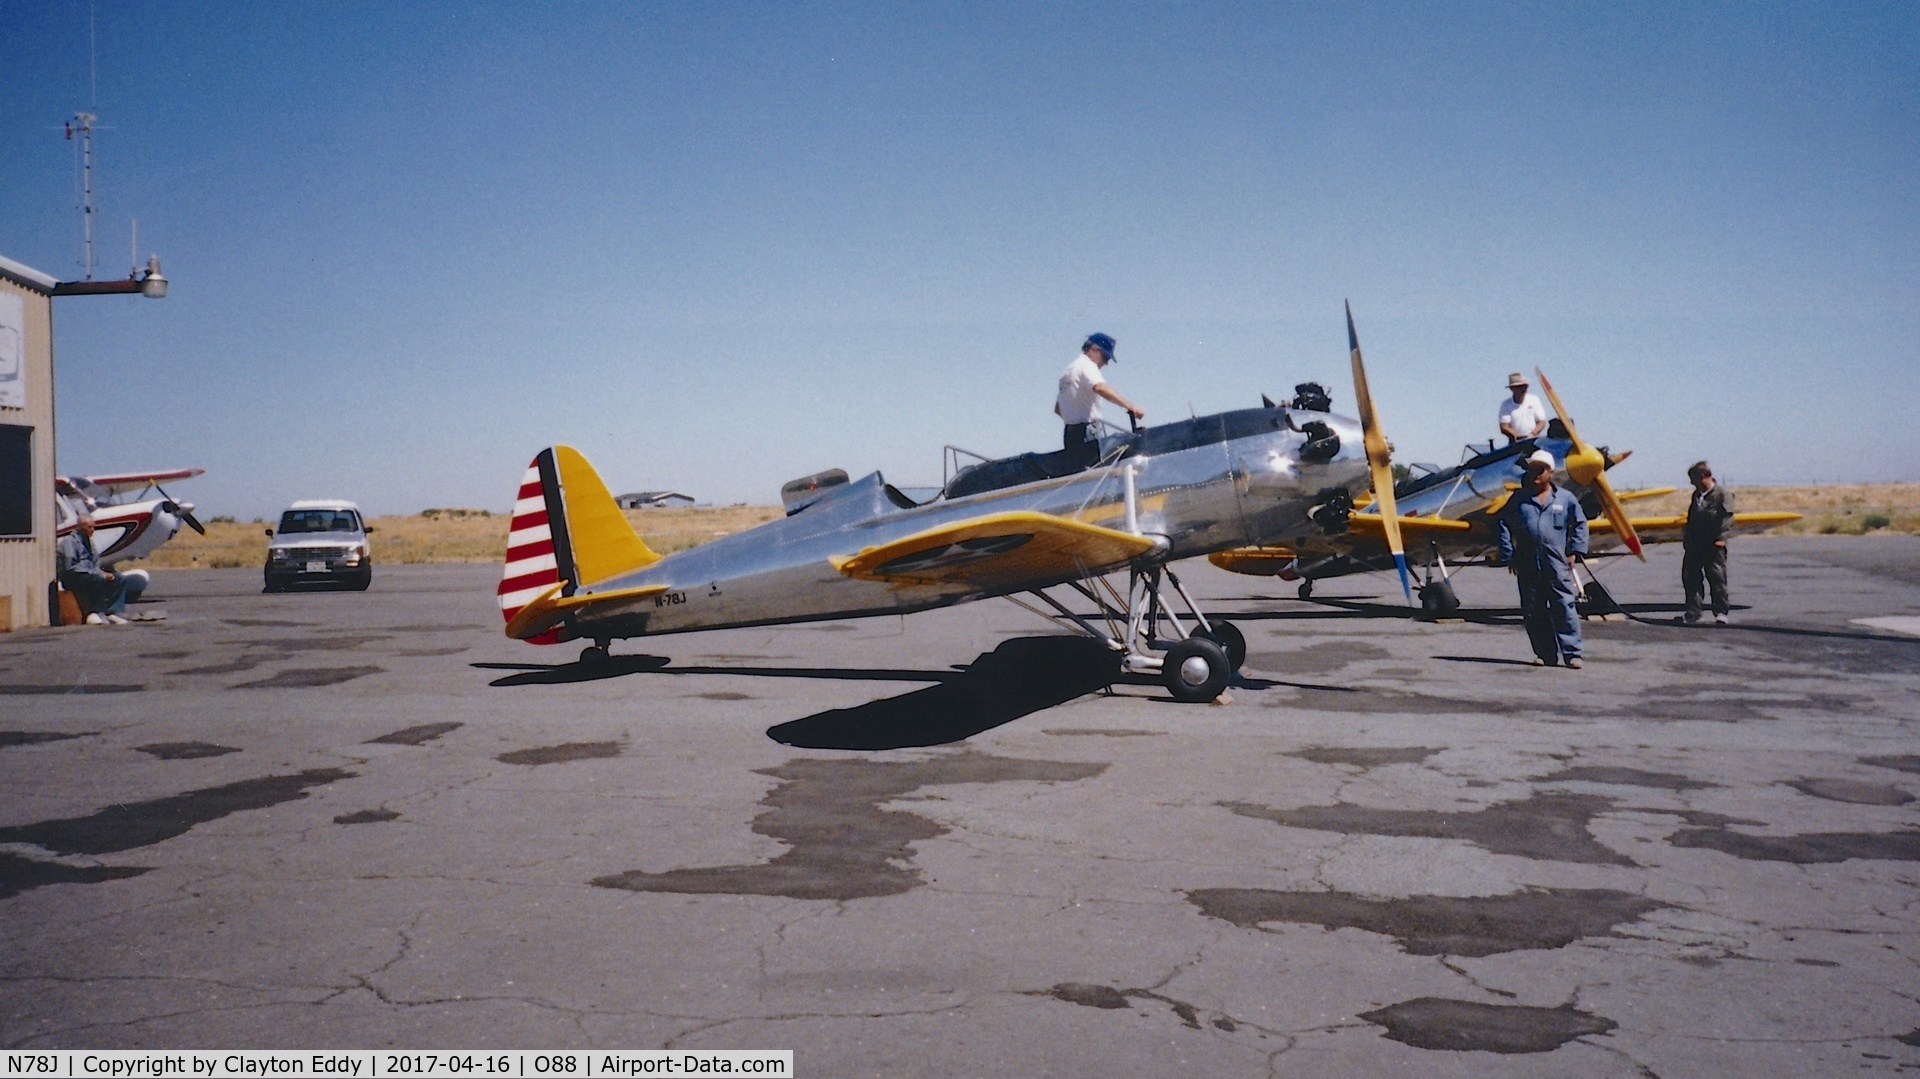 N78J, 1942 Ryan Aeronautical ST3KR C/N 1682, Old Rio Vista Airport California 1980's?